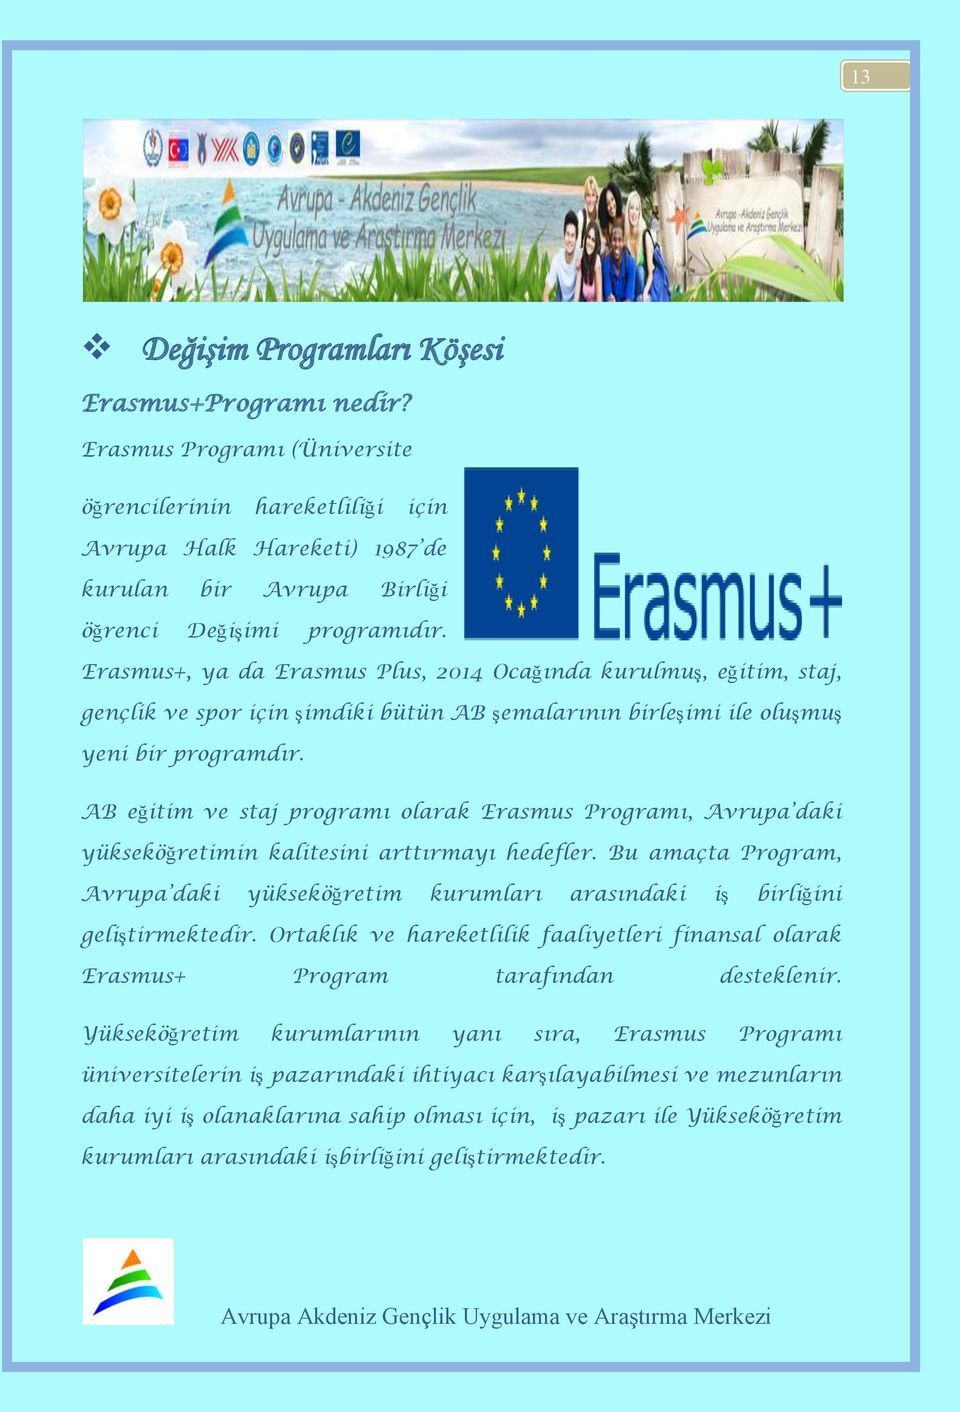 Erasmus+, ya da Erasmus Plus, 2014 Ocağında kurulmuş, eğitim, staj, gençlik ve spor için şimdiki bütün AB şemalarının birleşimi ile oluşmuş yeni bir programdır.